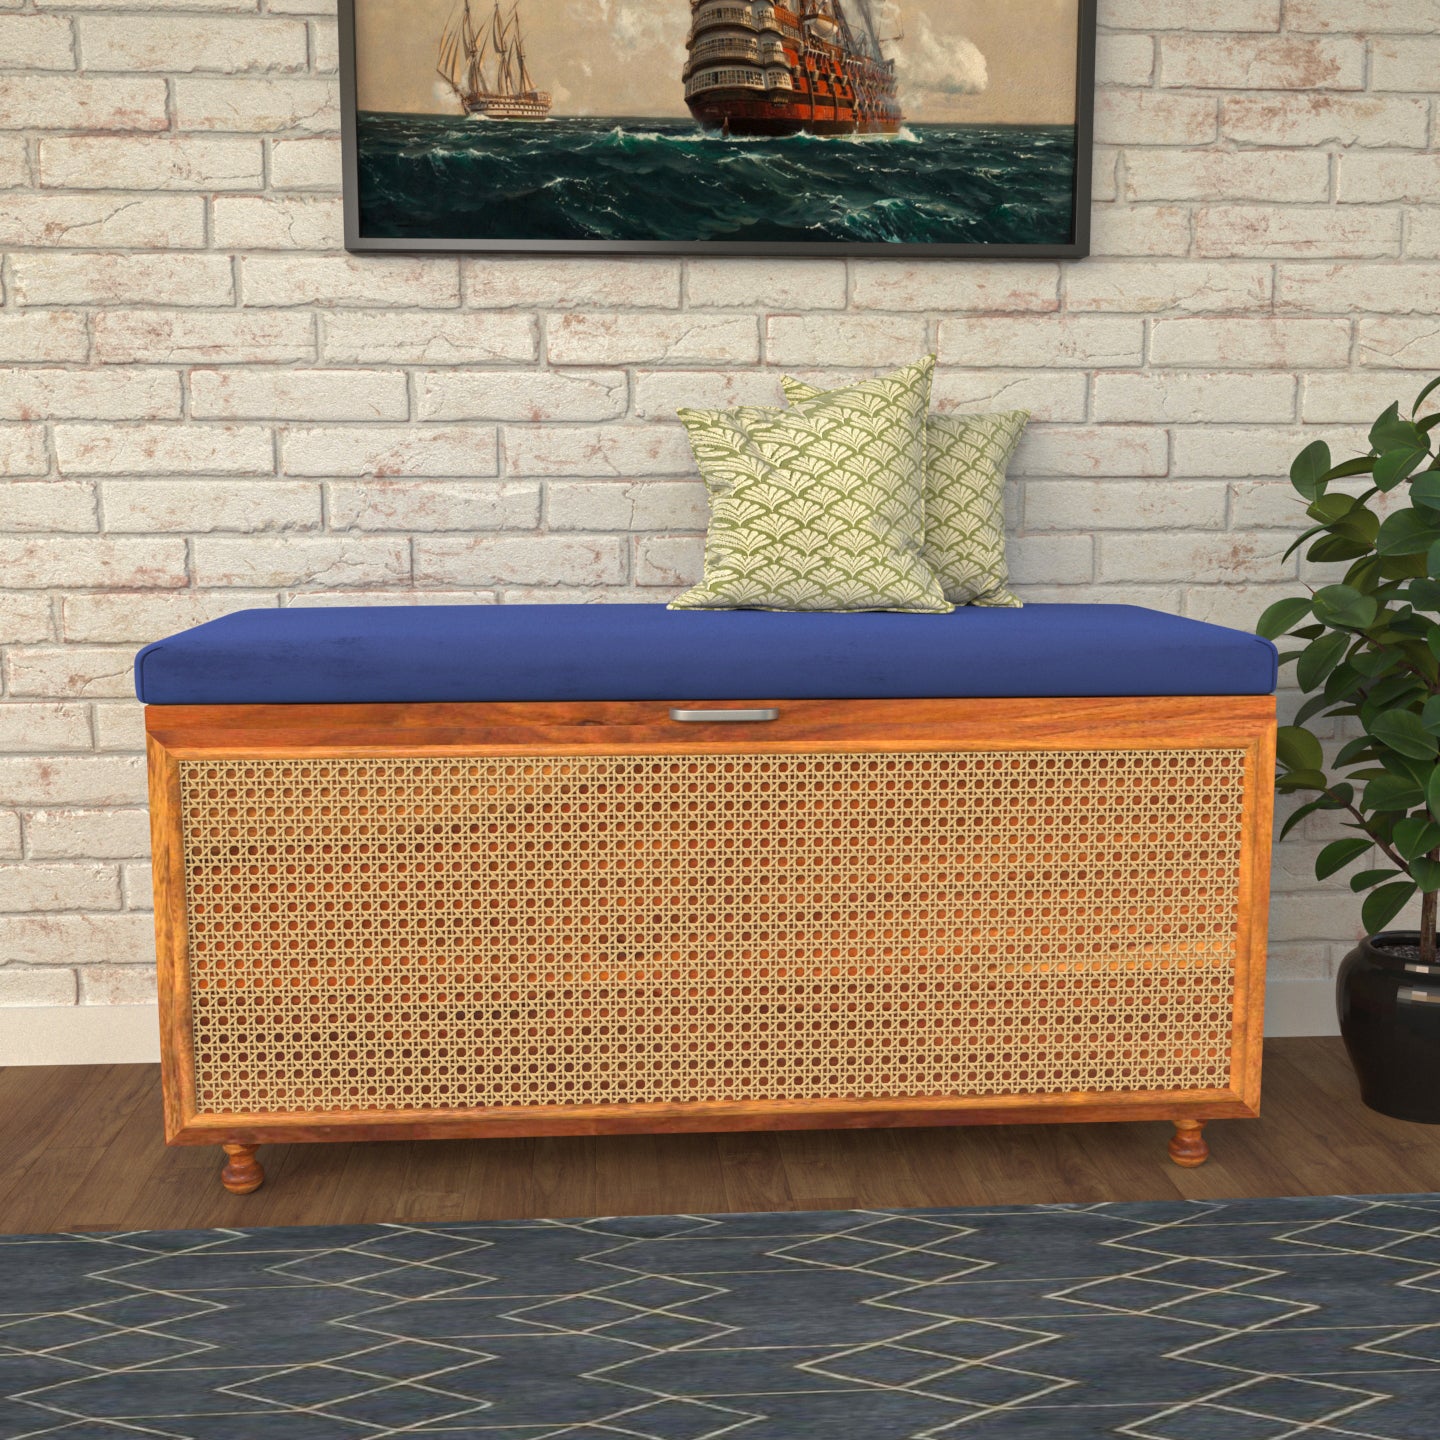 Elegant True Handmade Wooden Sitting Bench with Cane Storage Bench